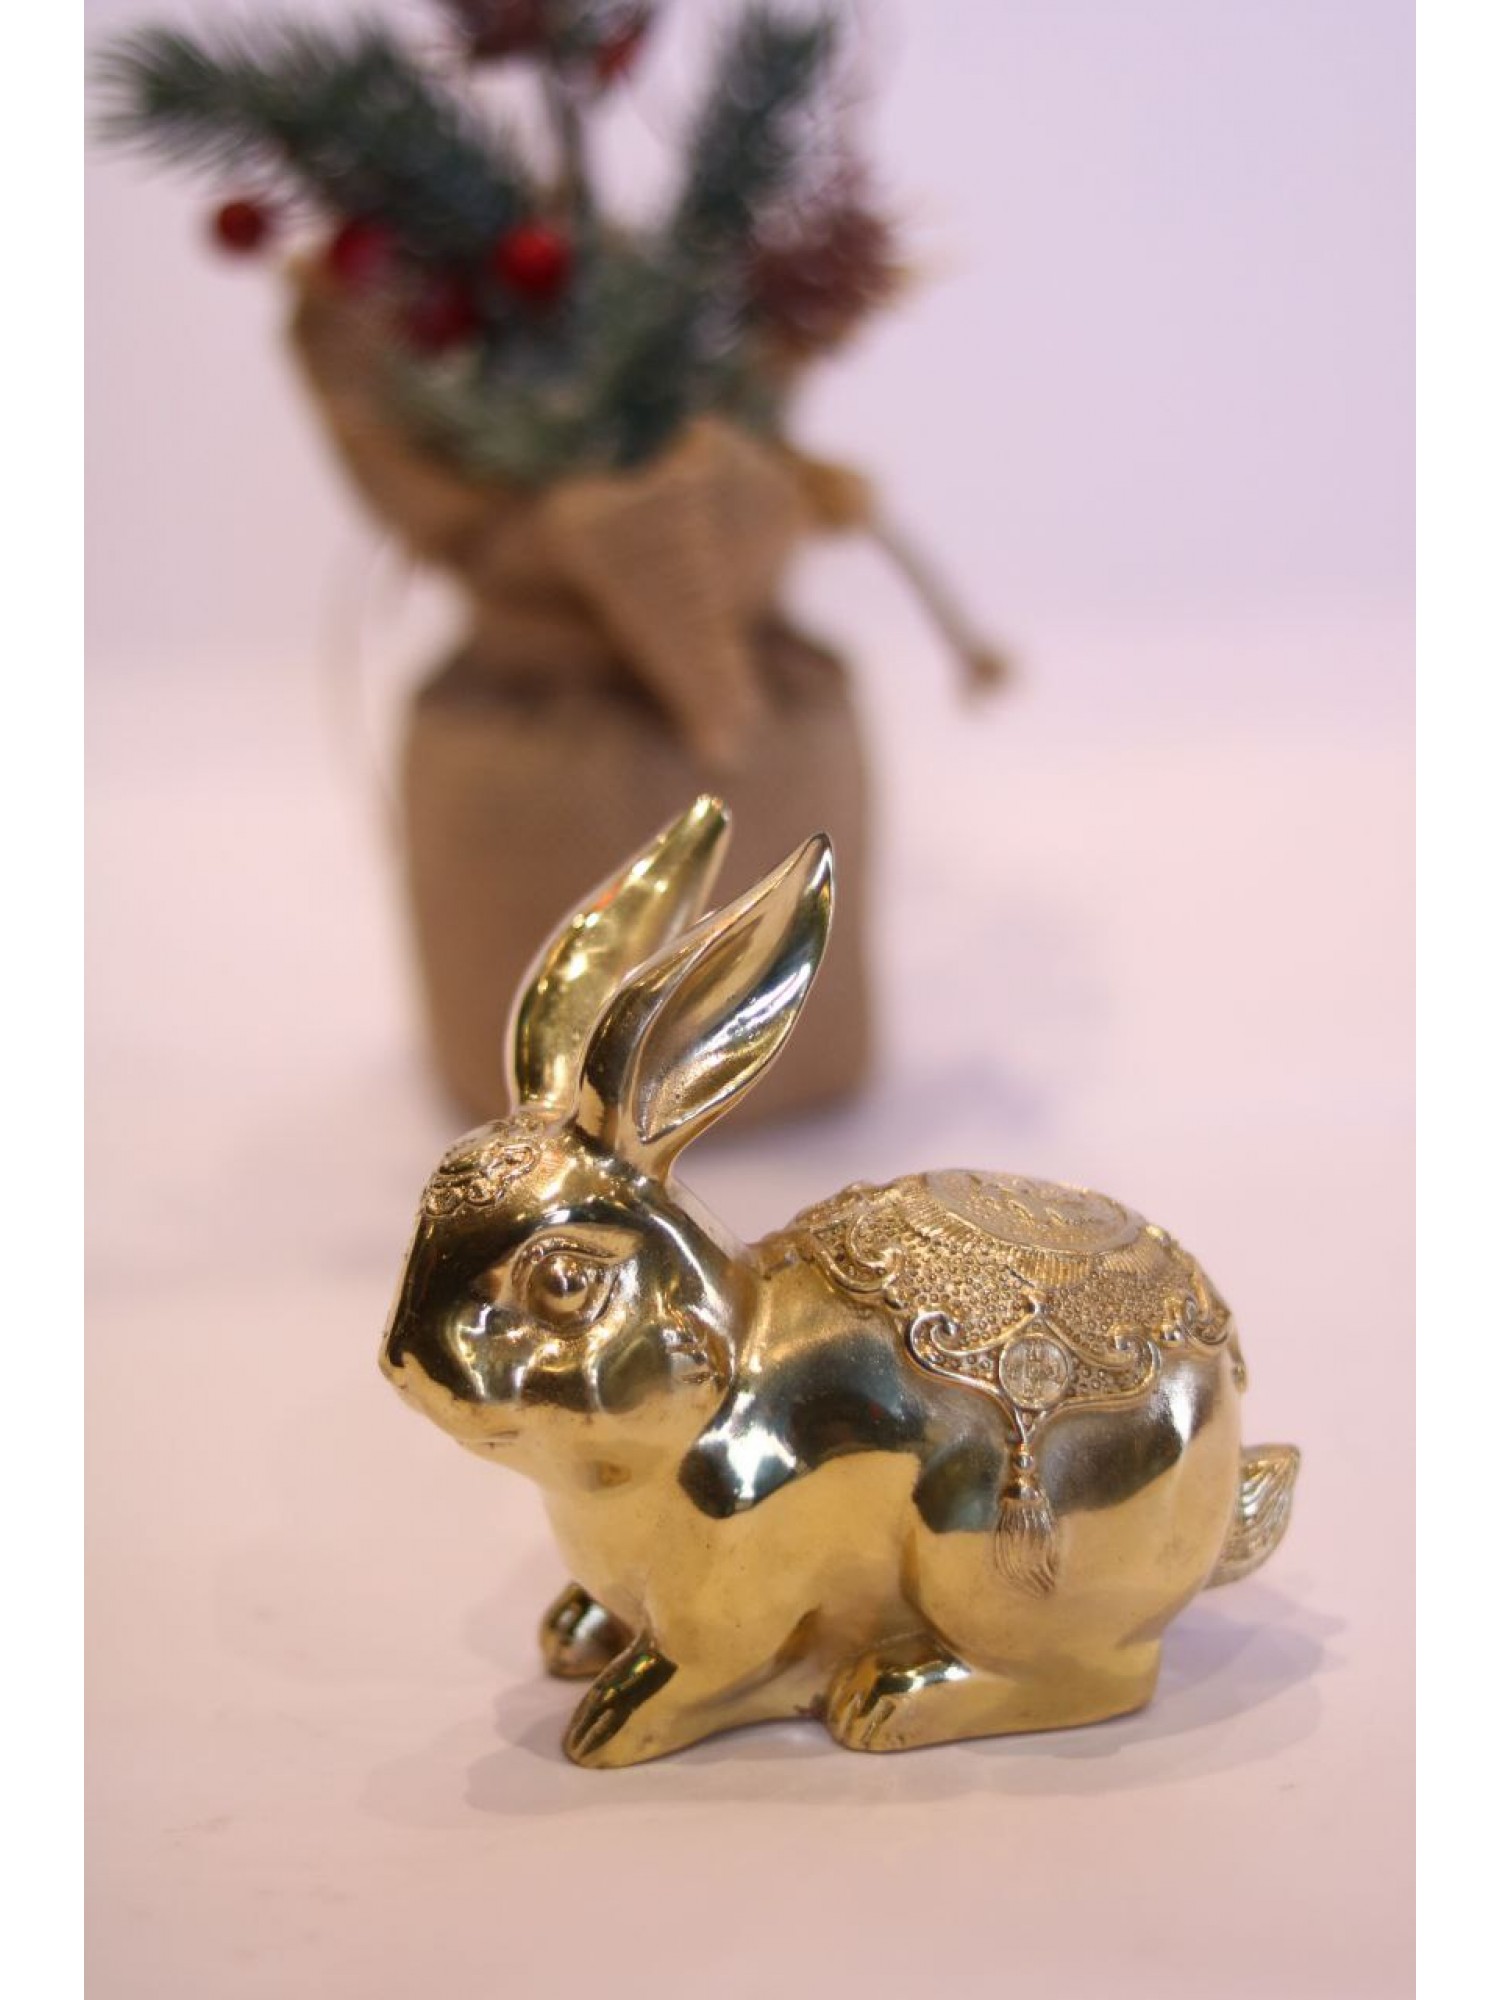 Статуэтка «Кролик» золотой (бронза) - символ 2023 года, дарит любовь и семейную жизнь!